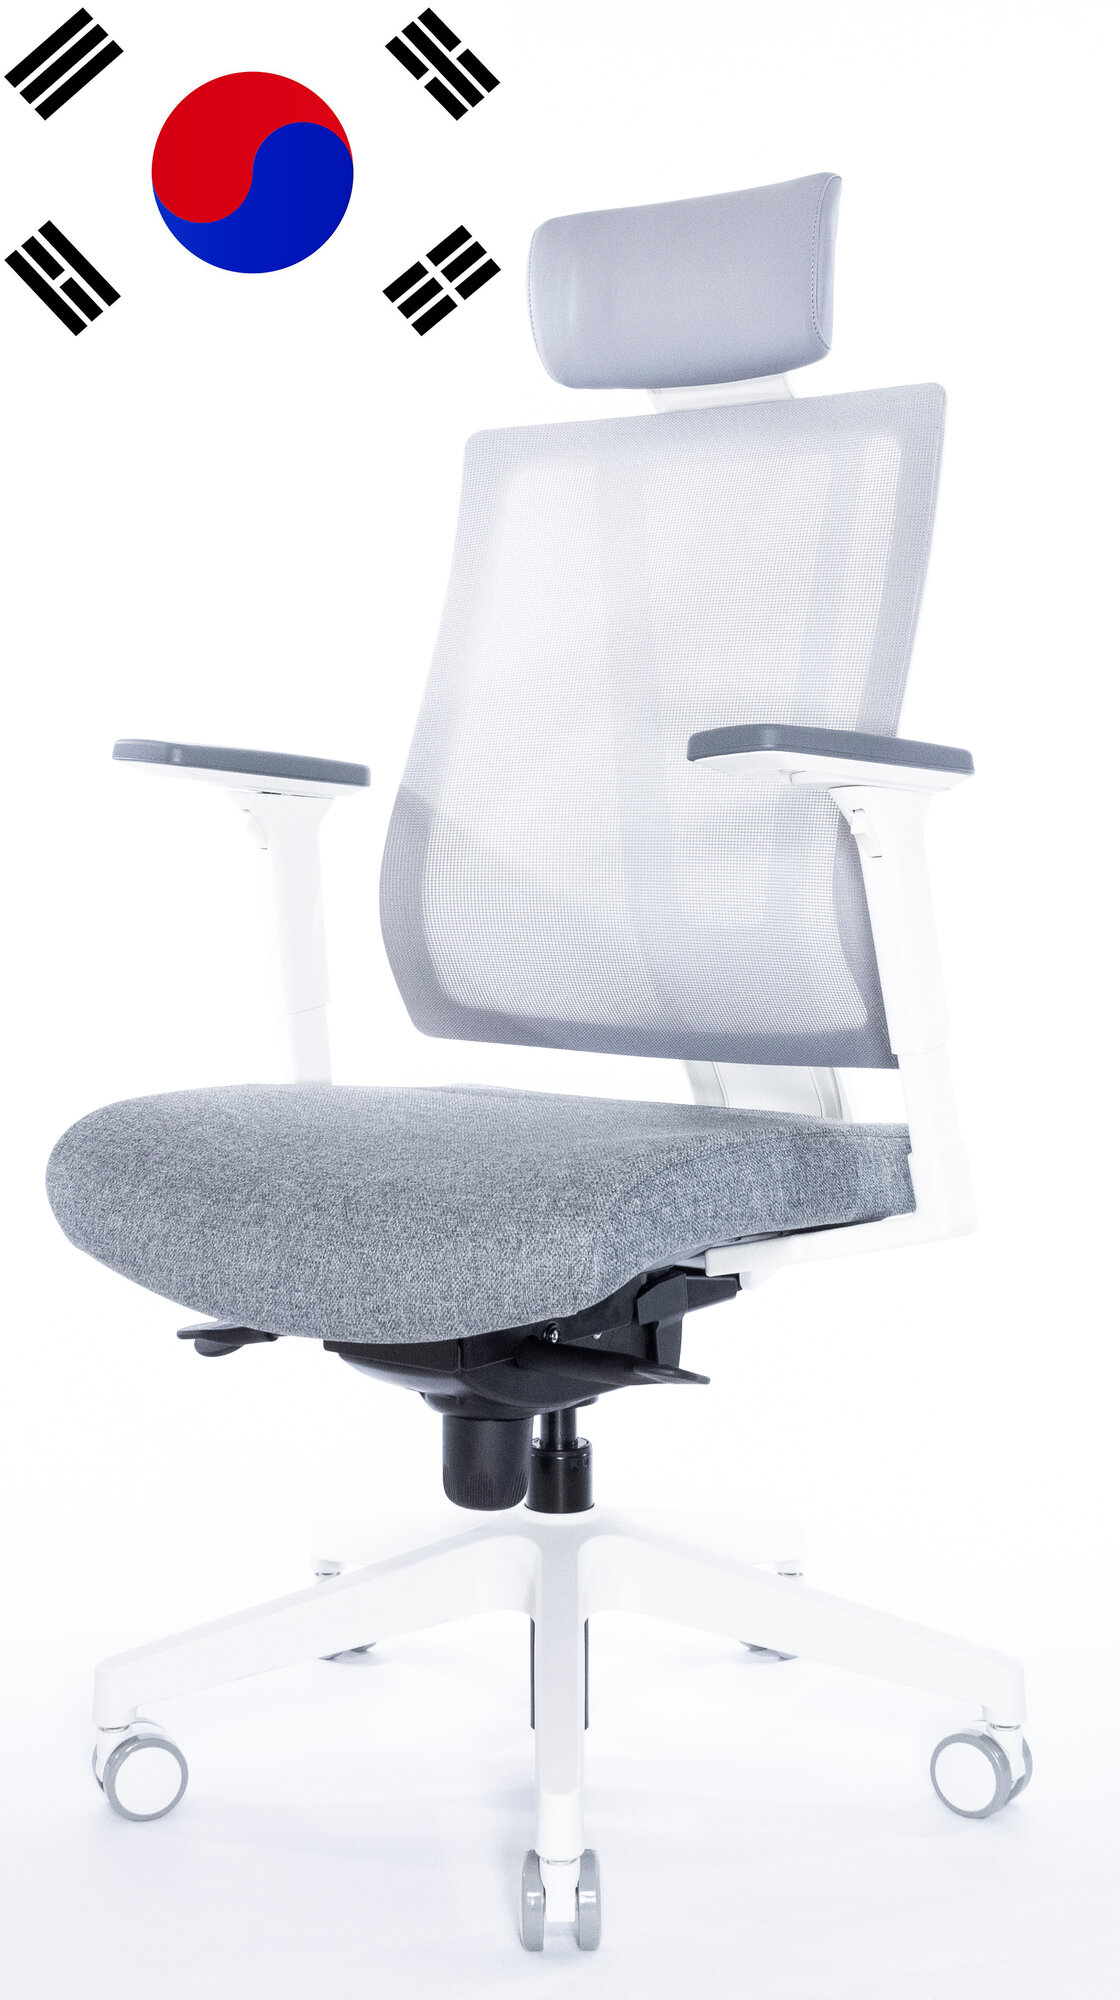 Компьютерное кресло Falto G1, цвет: серый/белый